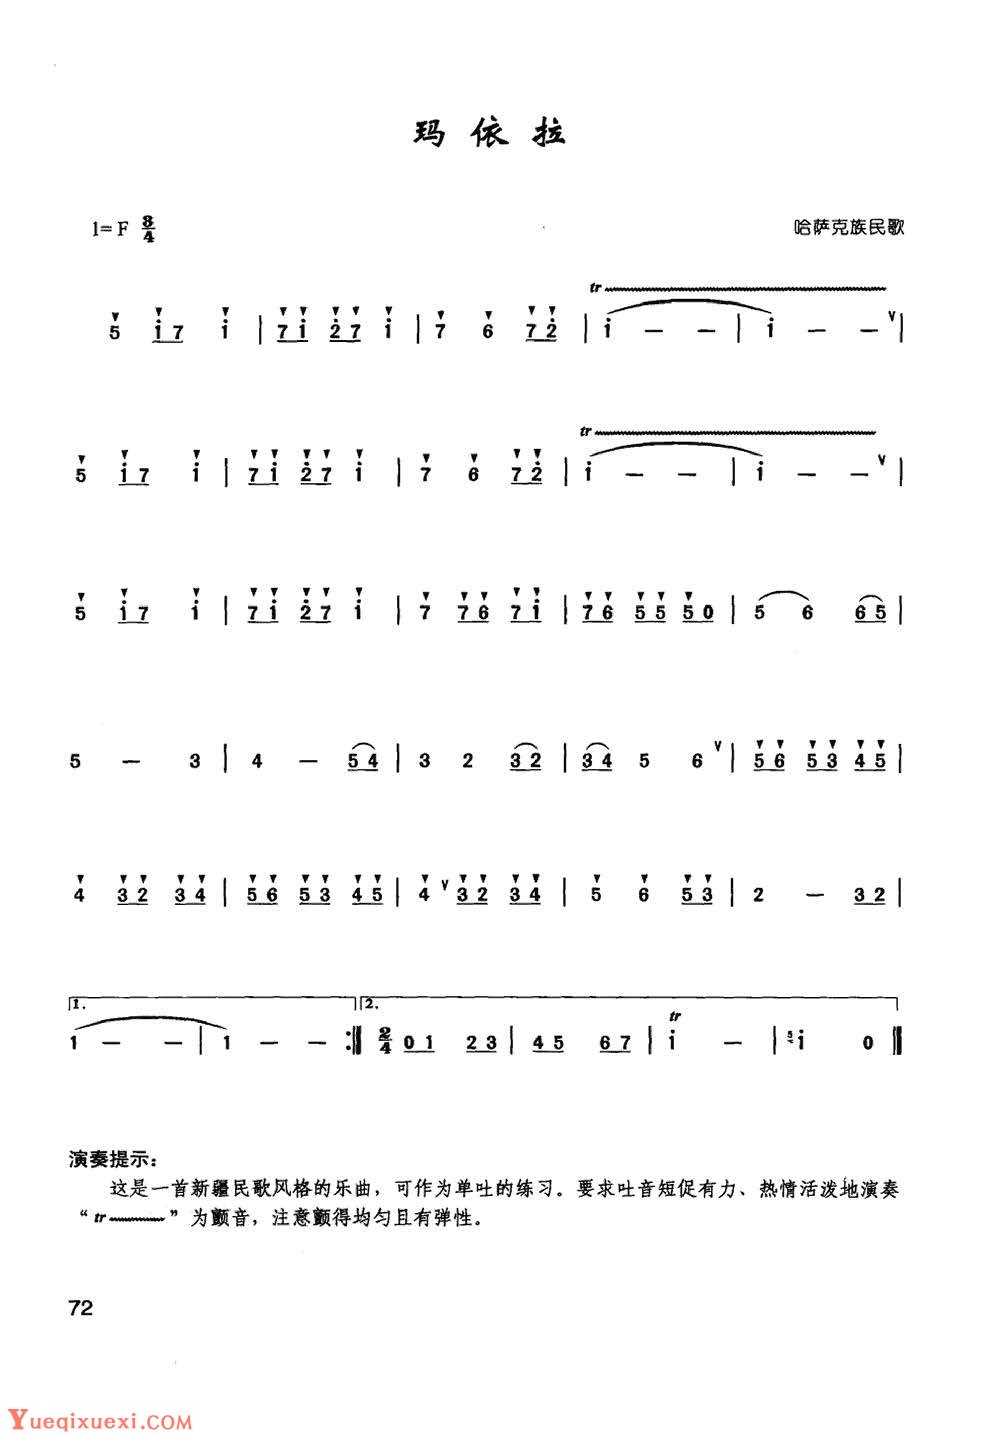 竹笛乐曲《玛依拉》中国民歌